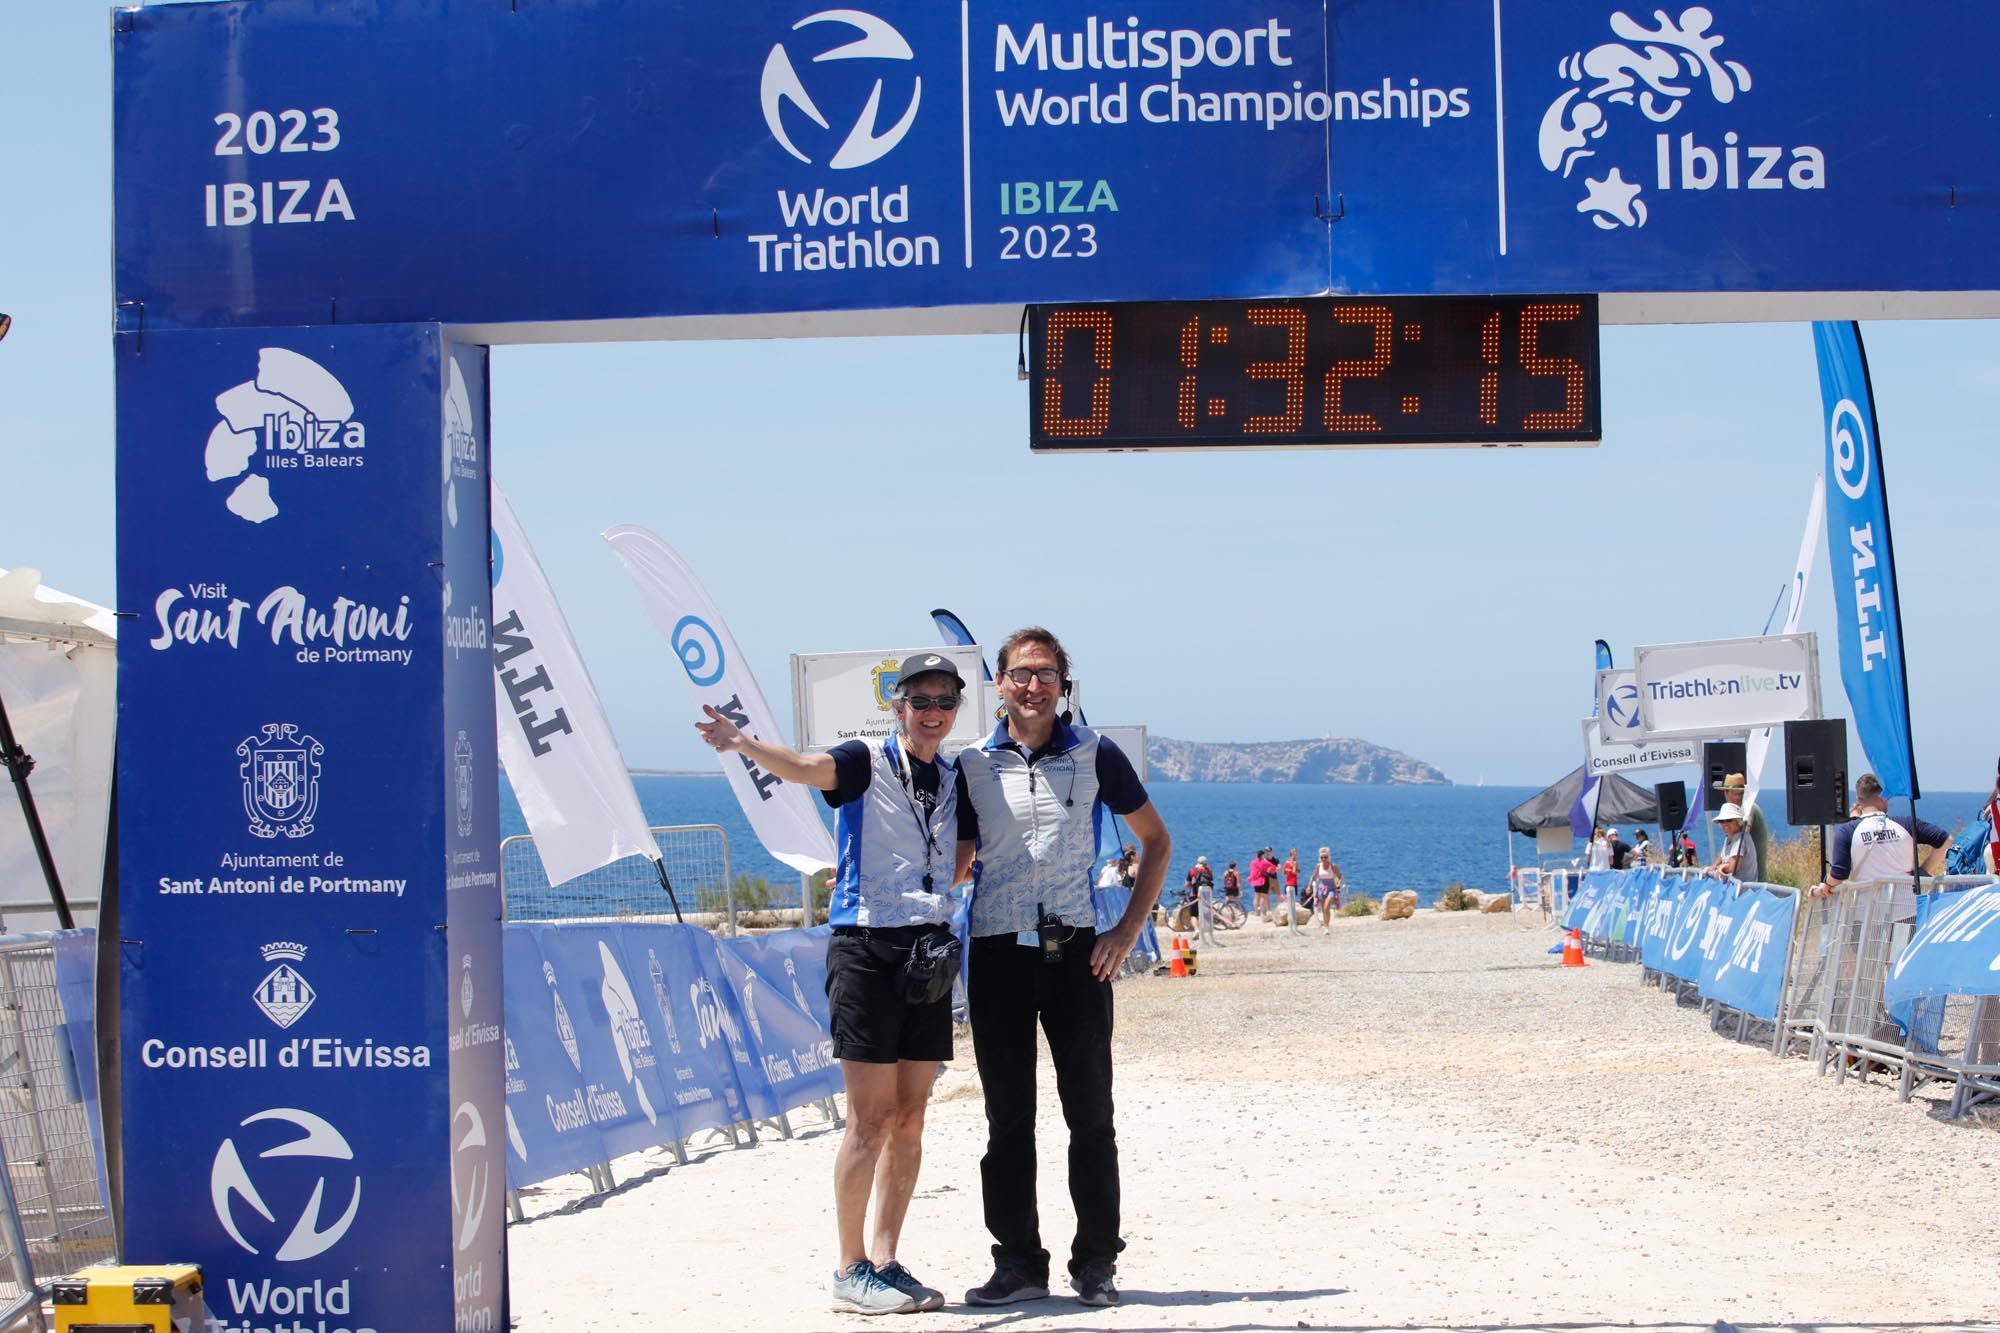 Campeonato del Mundo de Triatlón Cros en Ibiza